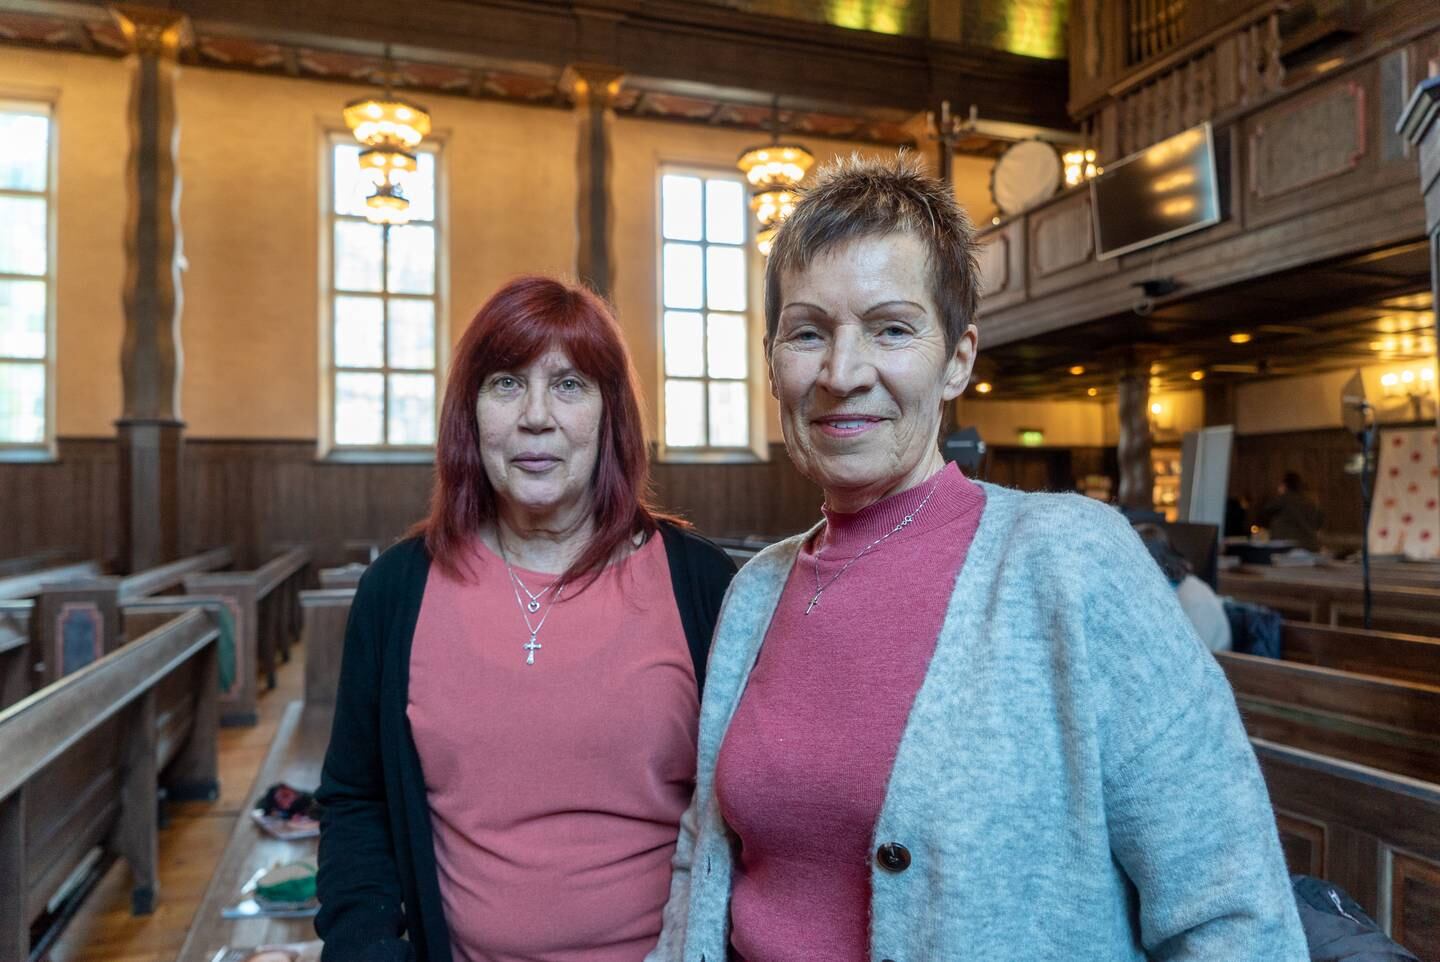 Frå v.: Dina Haagensen (60) og Marit Støle (64). Bilete tekne på JK2022 (årleg konferanse) i Markus kirke i Oslo.